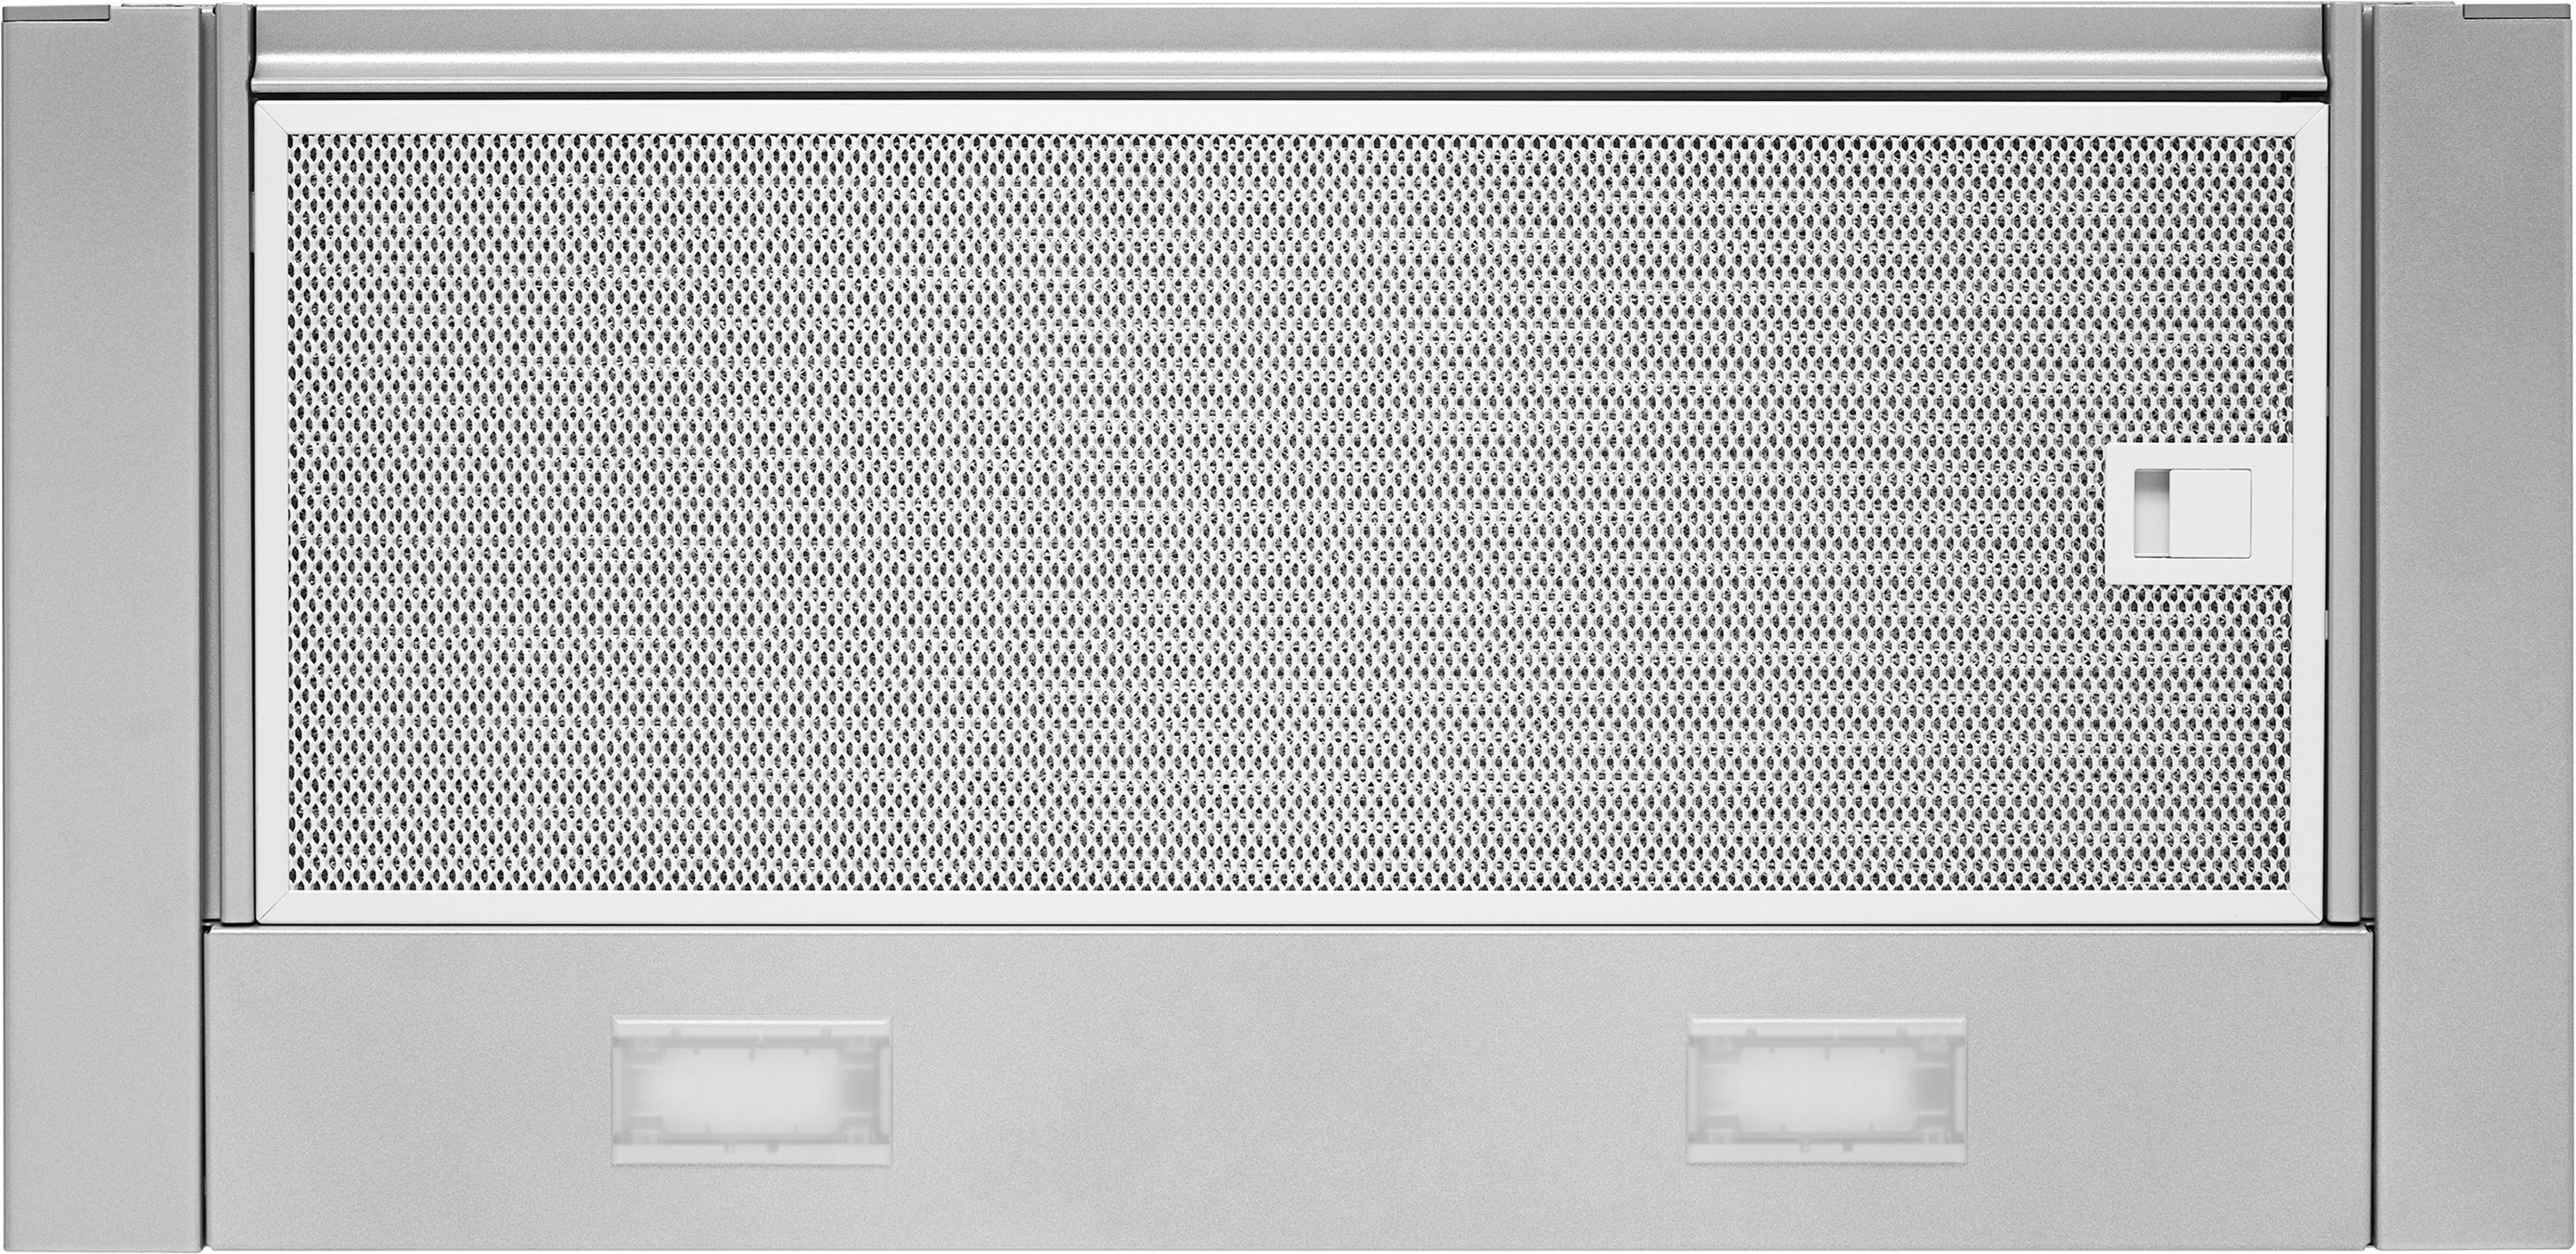 Кухонная вытяжка Bosch DFM064W54 инструкция - изображение 6